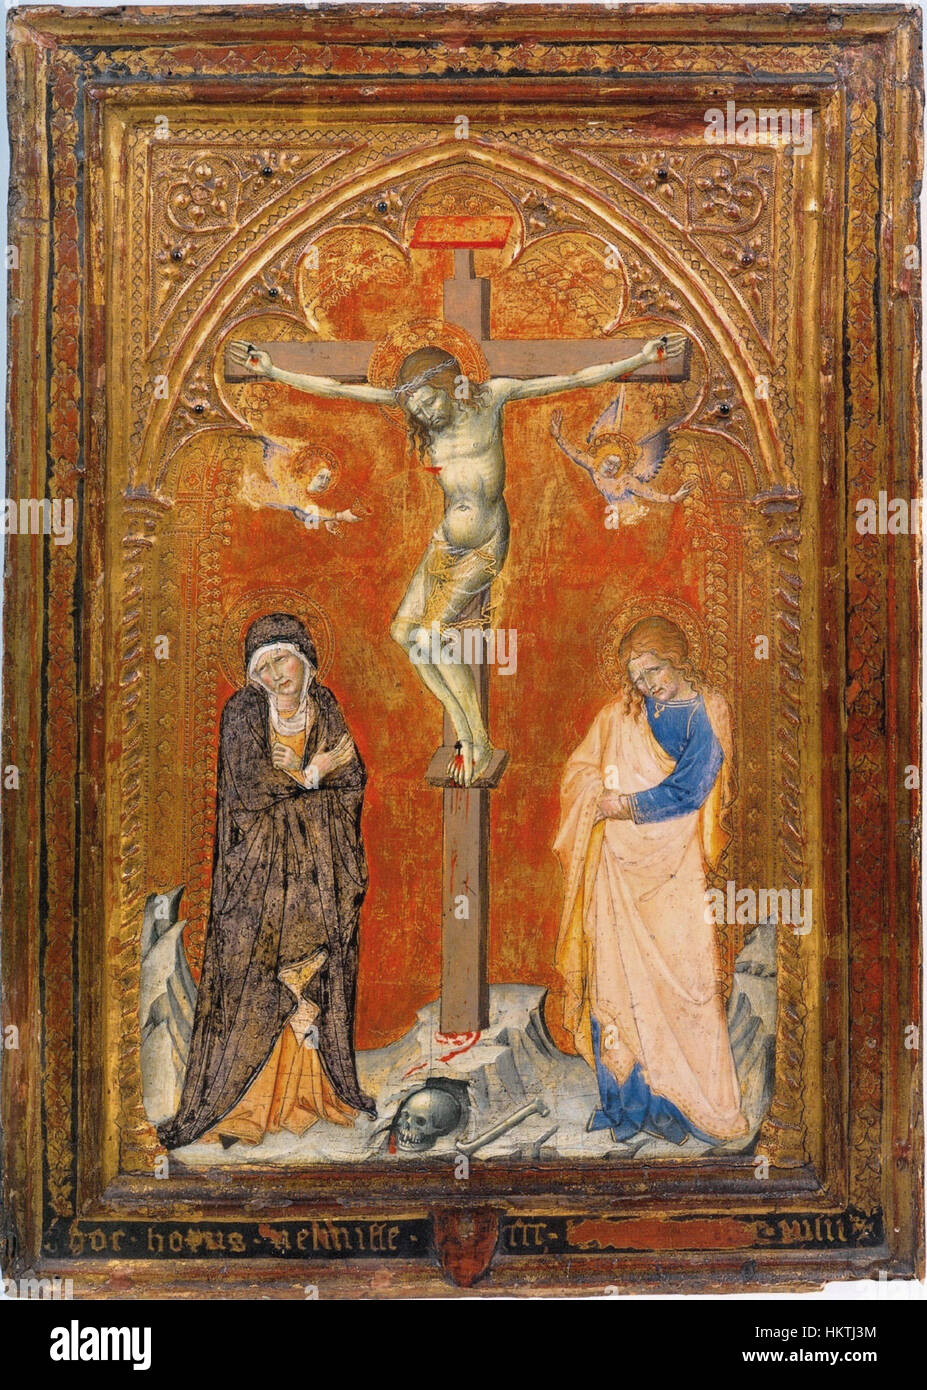 Francesco di Vannuccio. Crucifixion avec la Vierge et saint Jean l'Evangelistc. 1387-88 Philadelphia Museum of Art (CAT94) Banque D'Images